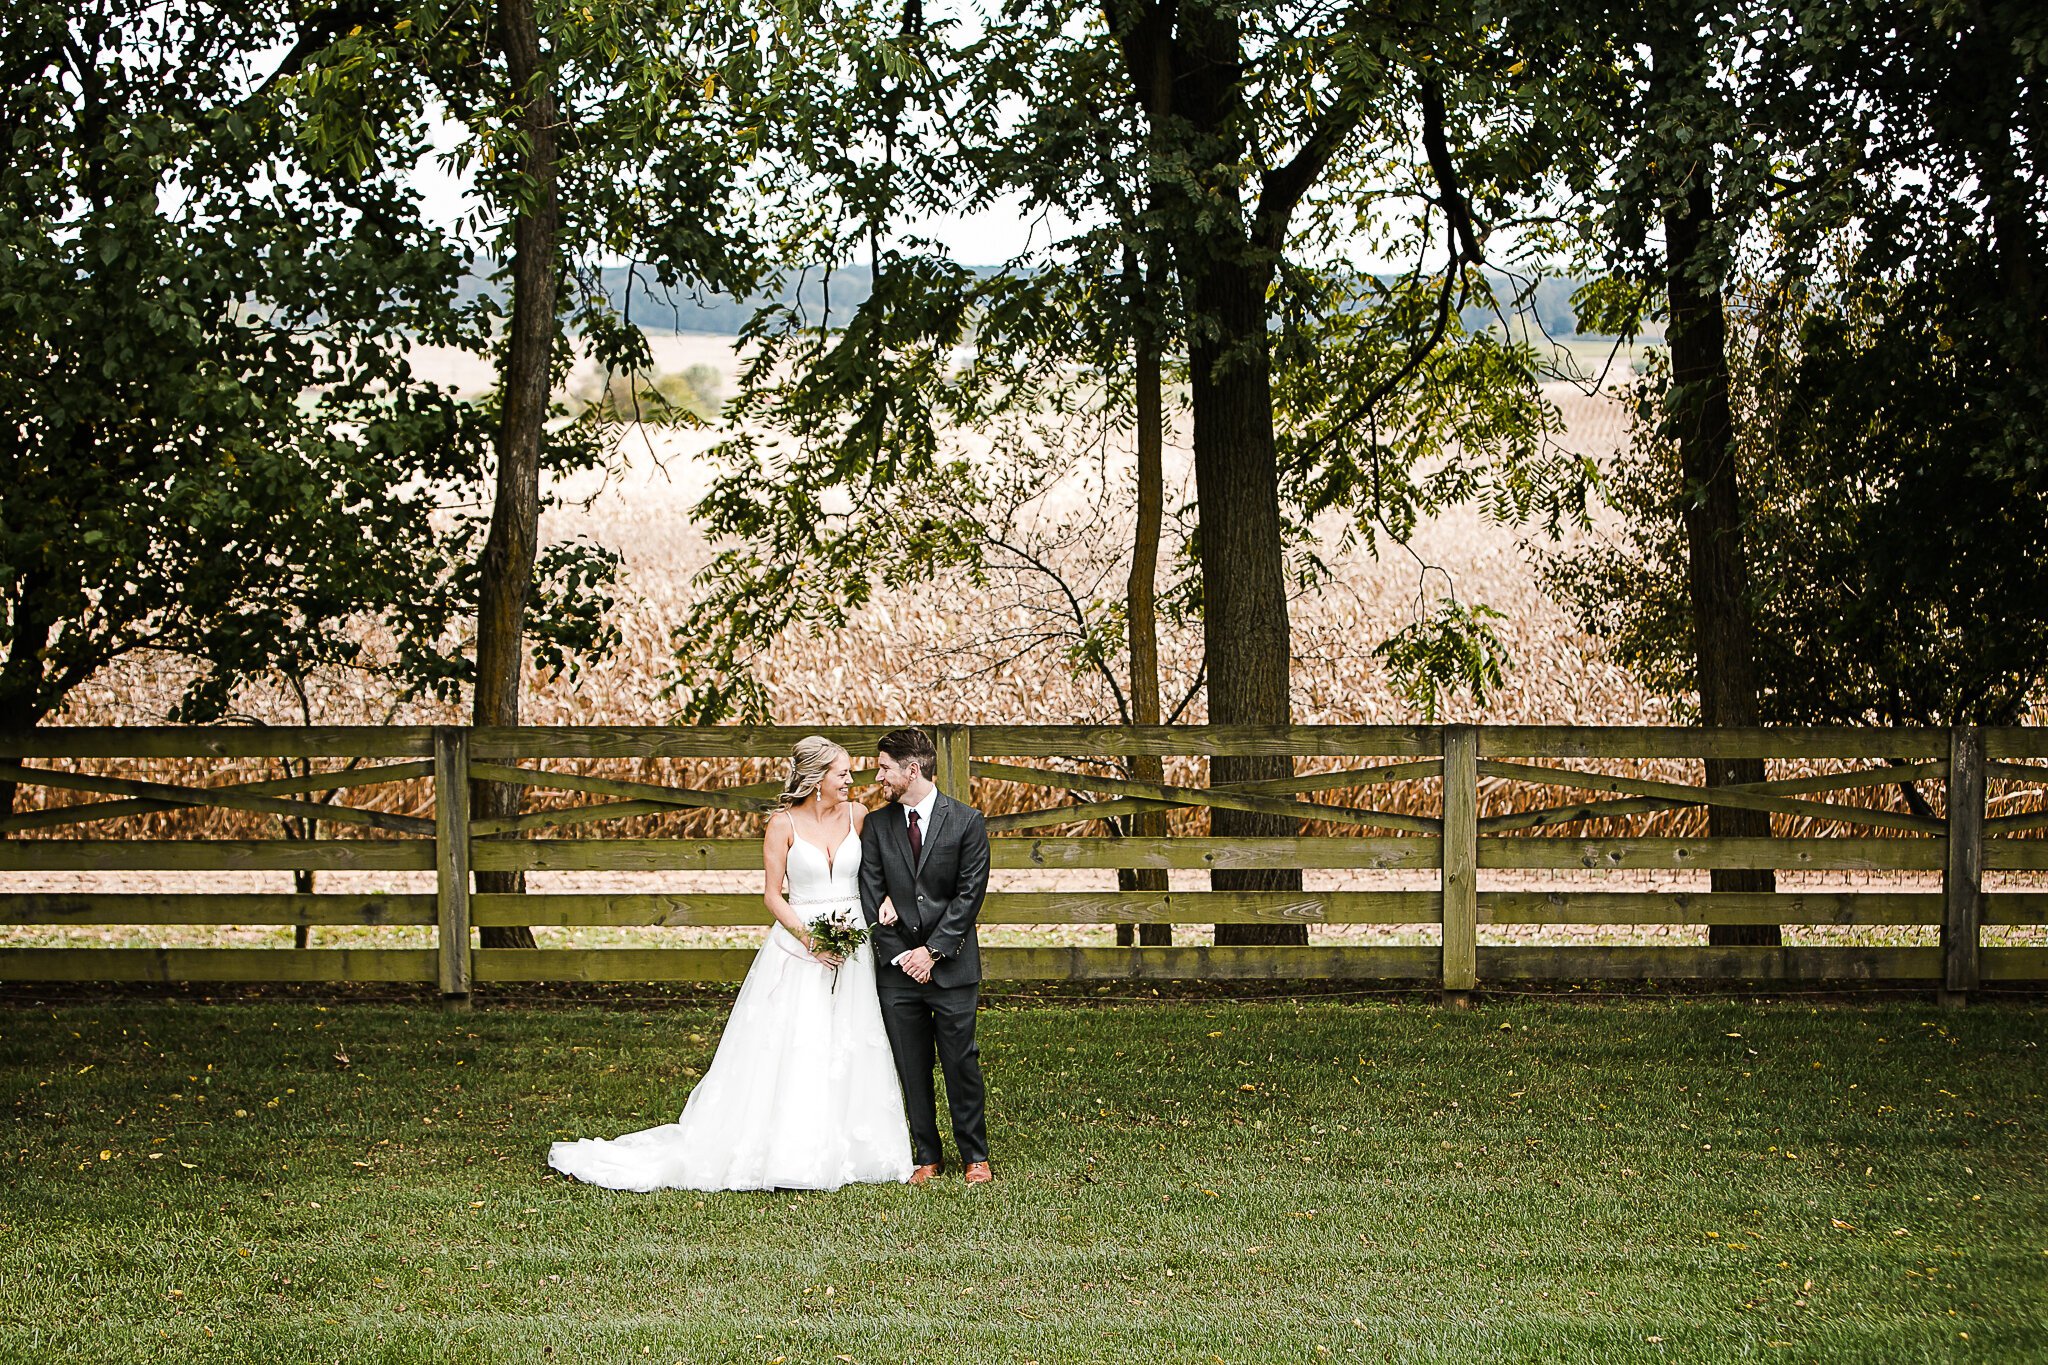 Walker's Overlook Wedding in Frederick, Maryland